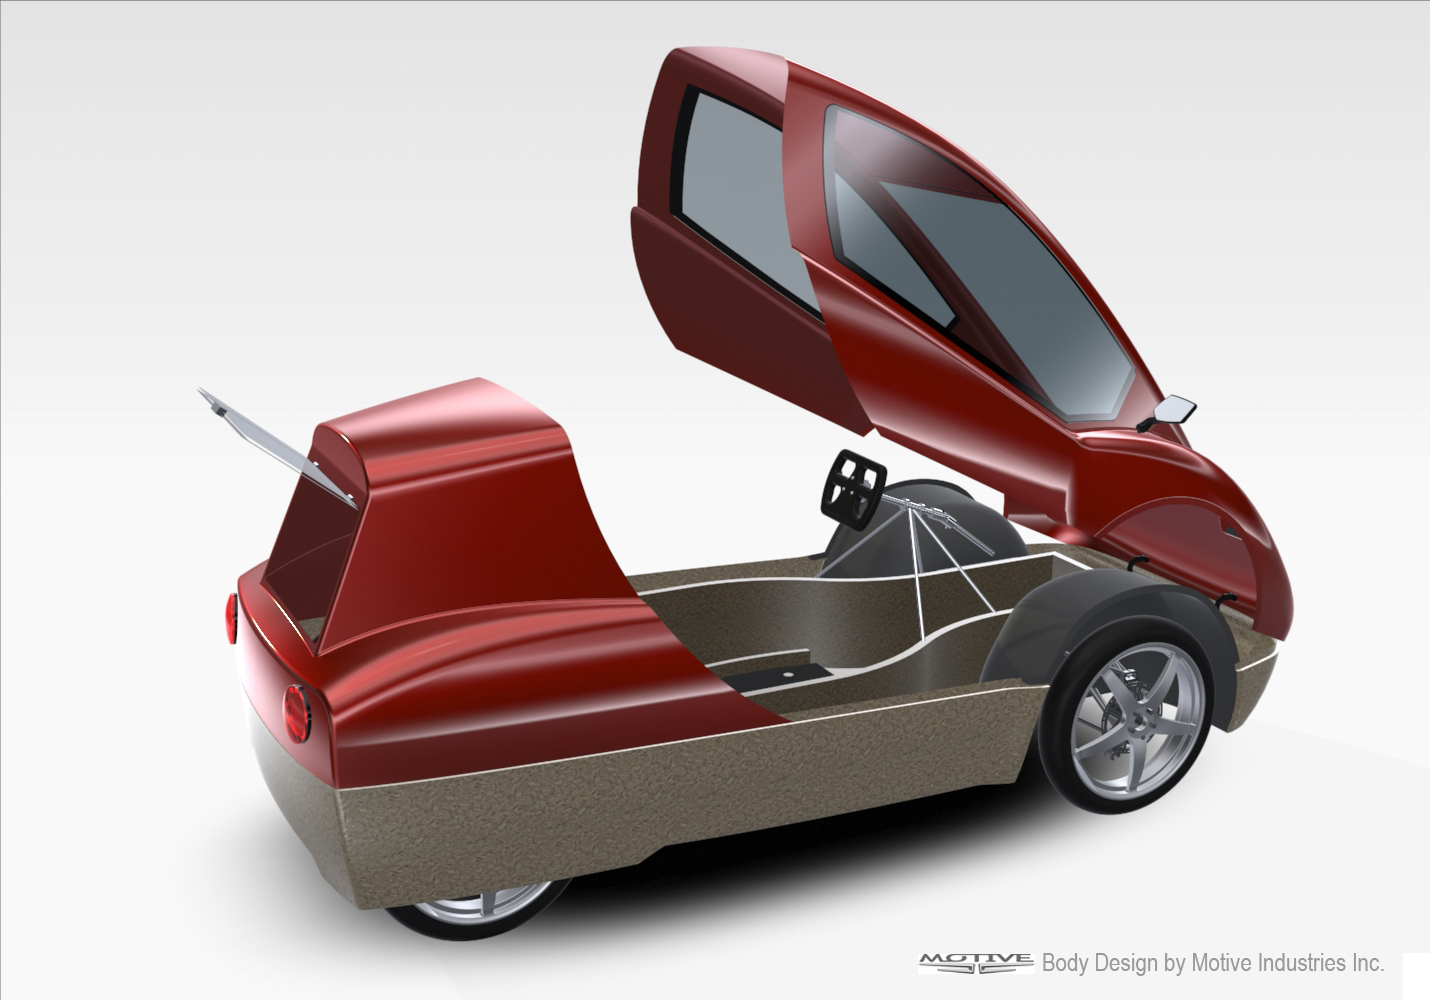 Ecar Keage Concepts Calgary Alberta Automotive Design